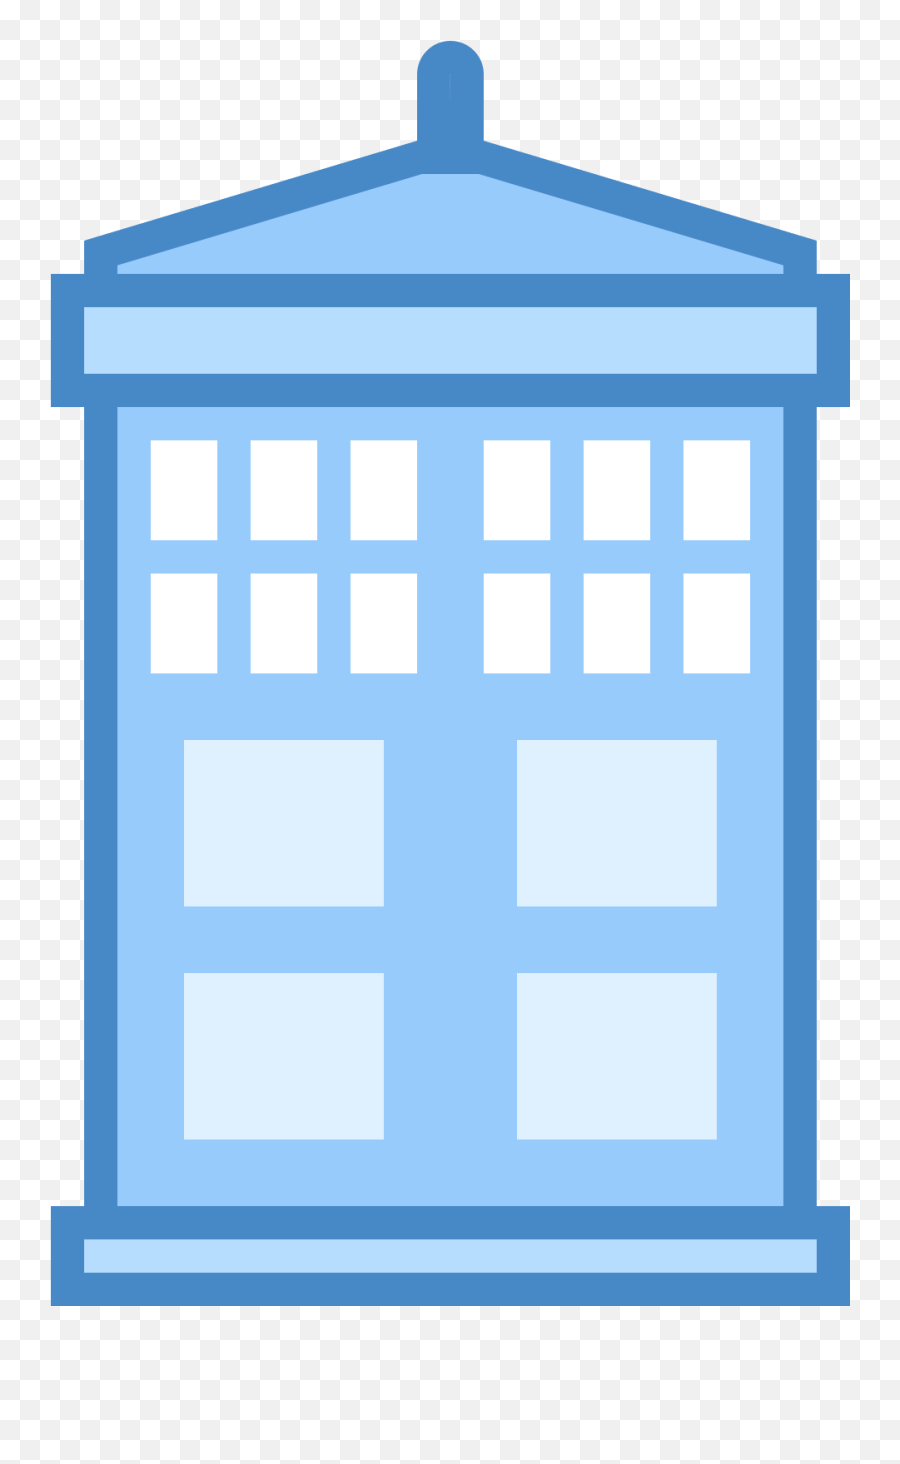 Download Hd Tardis Icon Transparent Png Image - Nicepngcom Vertical,Tardis Transparent